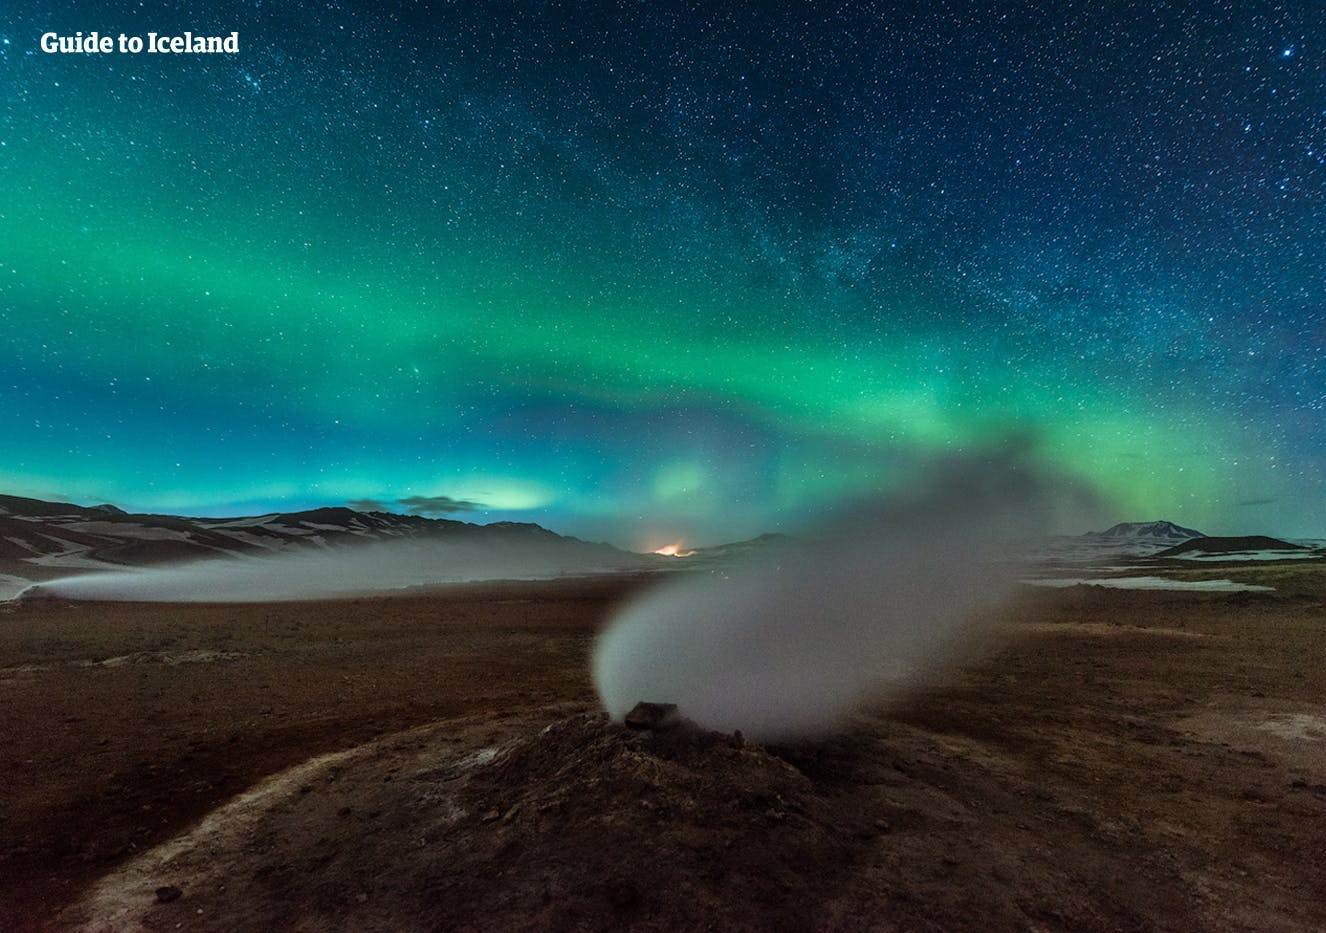 Luces del norte y un cielo estrellado sobre un respiradero de vapor en un área geotérmica cerca del lago Mývatn